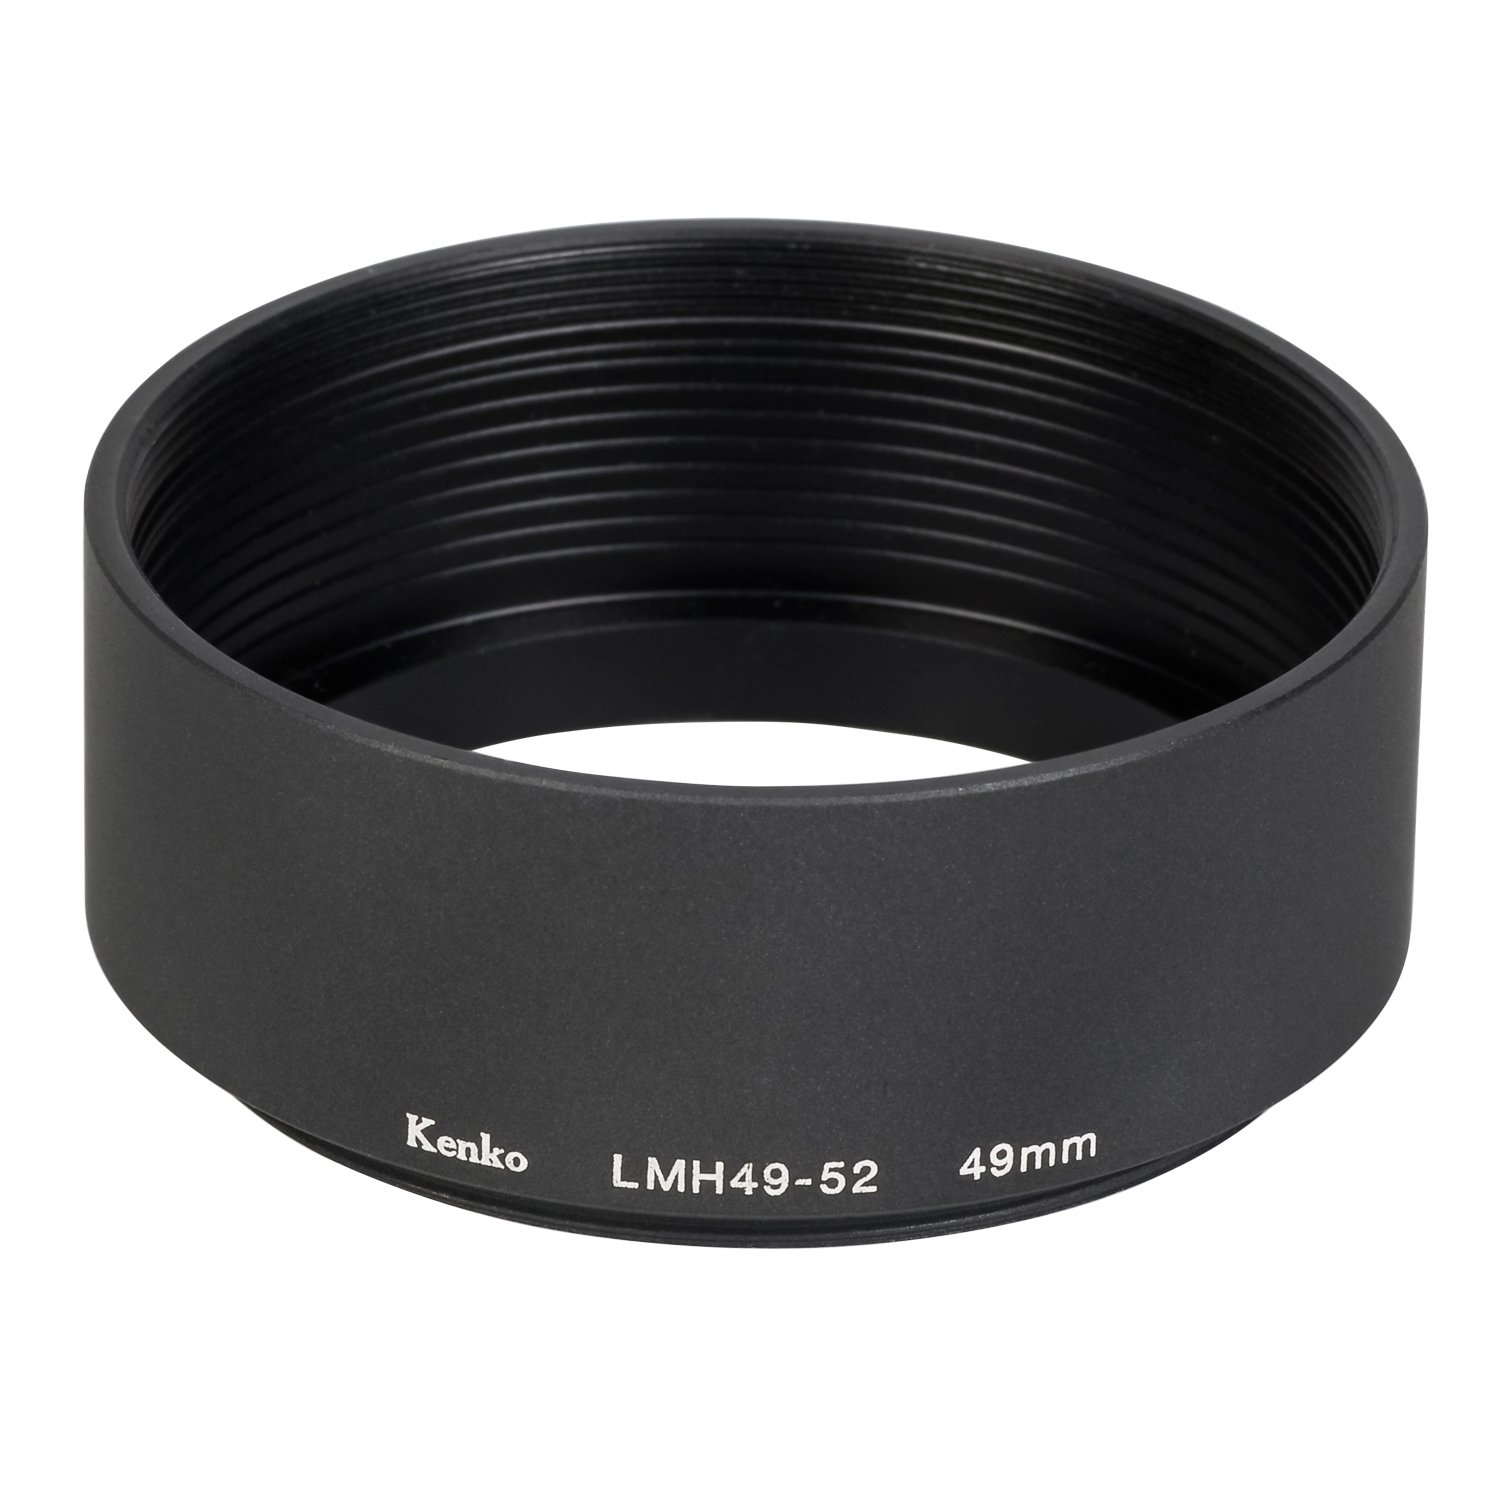 RA:Kenko レンズフード レンズメタルフード LMH49-52 BK 49mm アルミ製 連結可能 792025